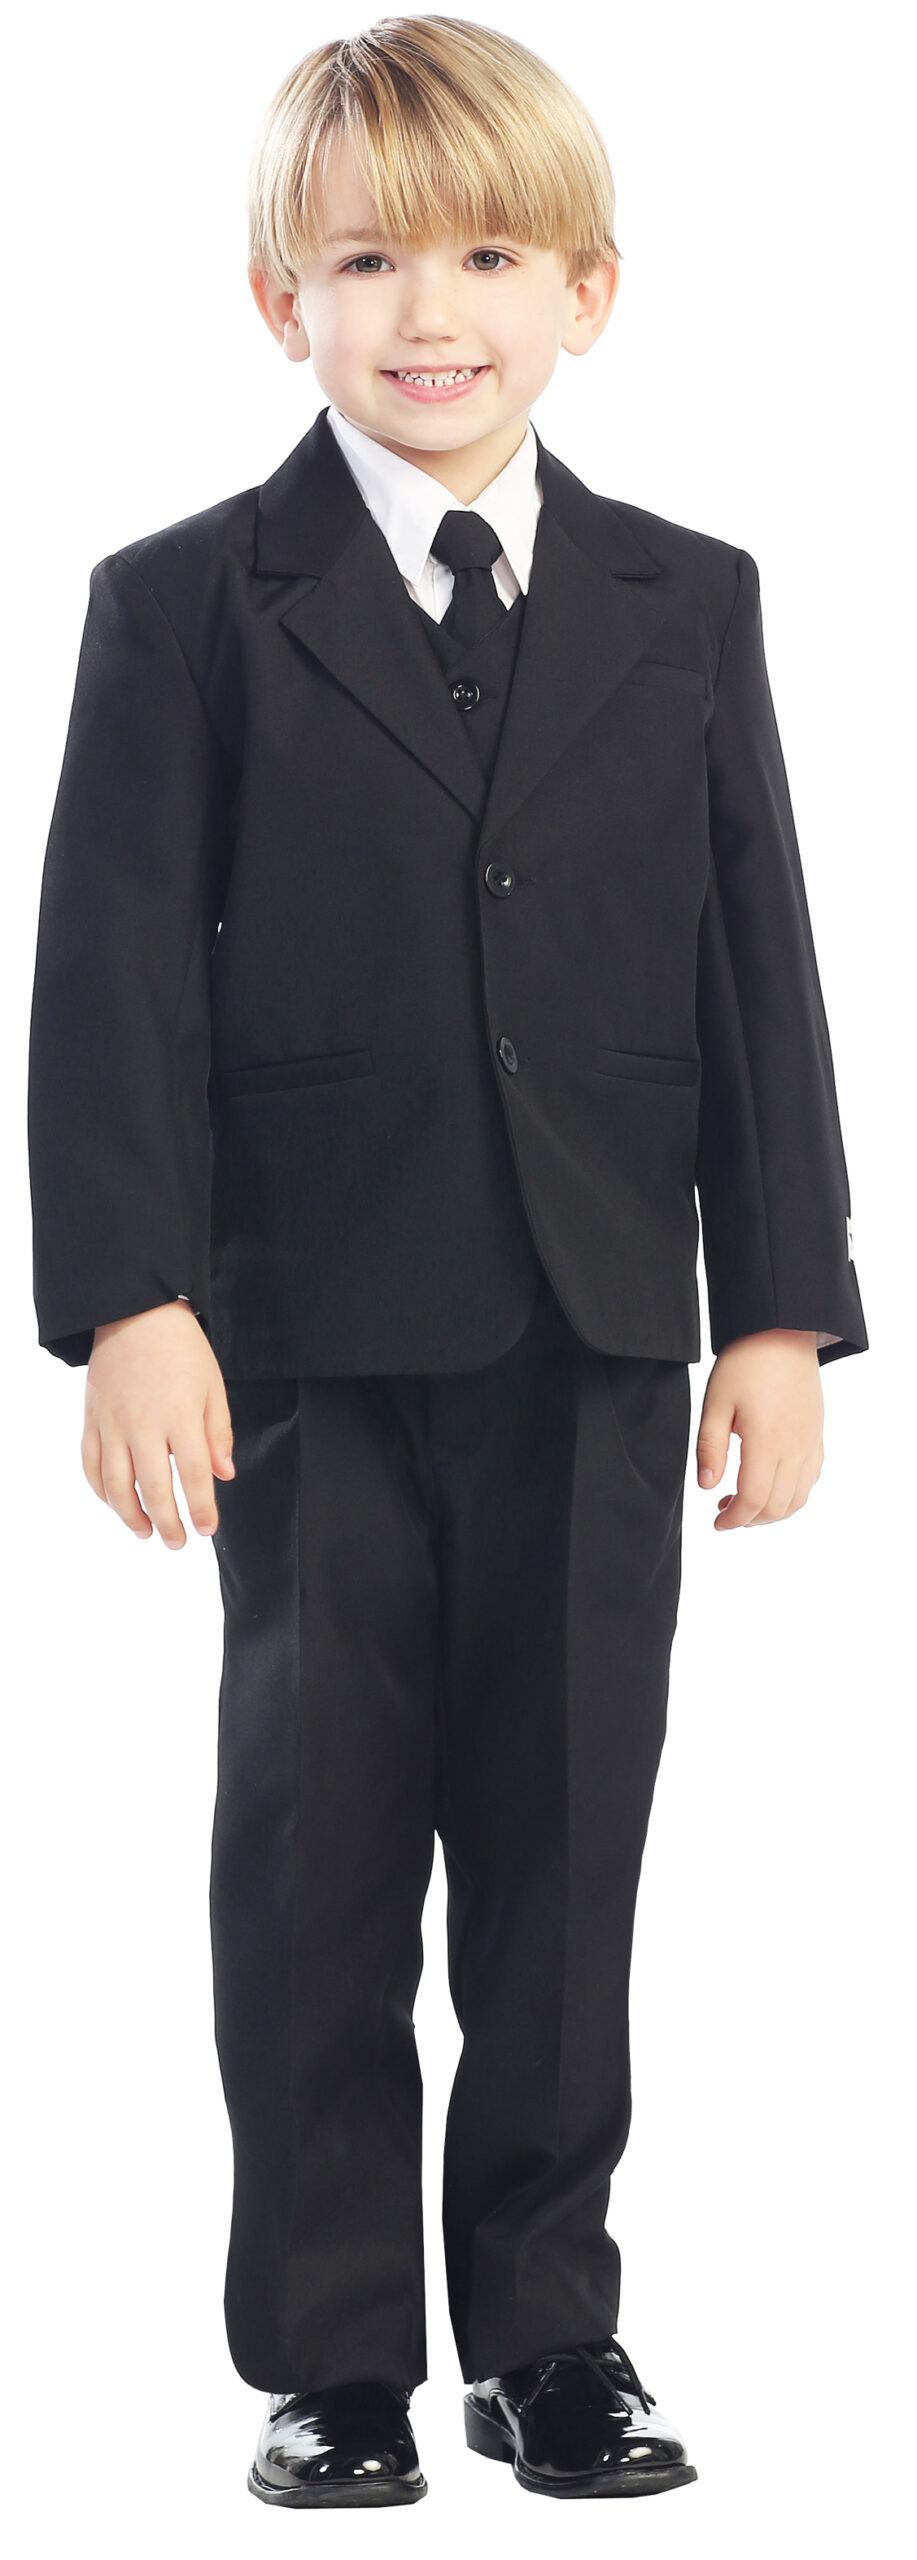 Avery Hill 5-Piece Boy's 2-Button Dress Suit Full-Back Vest - Black Size 6